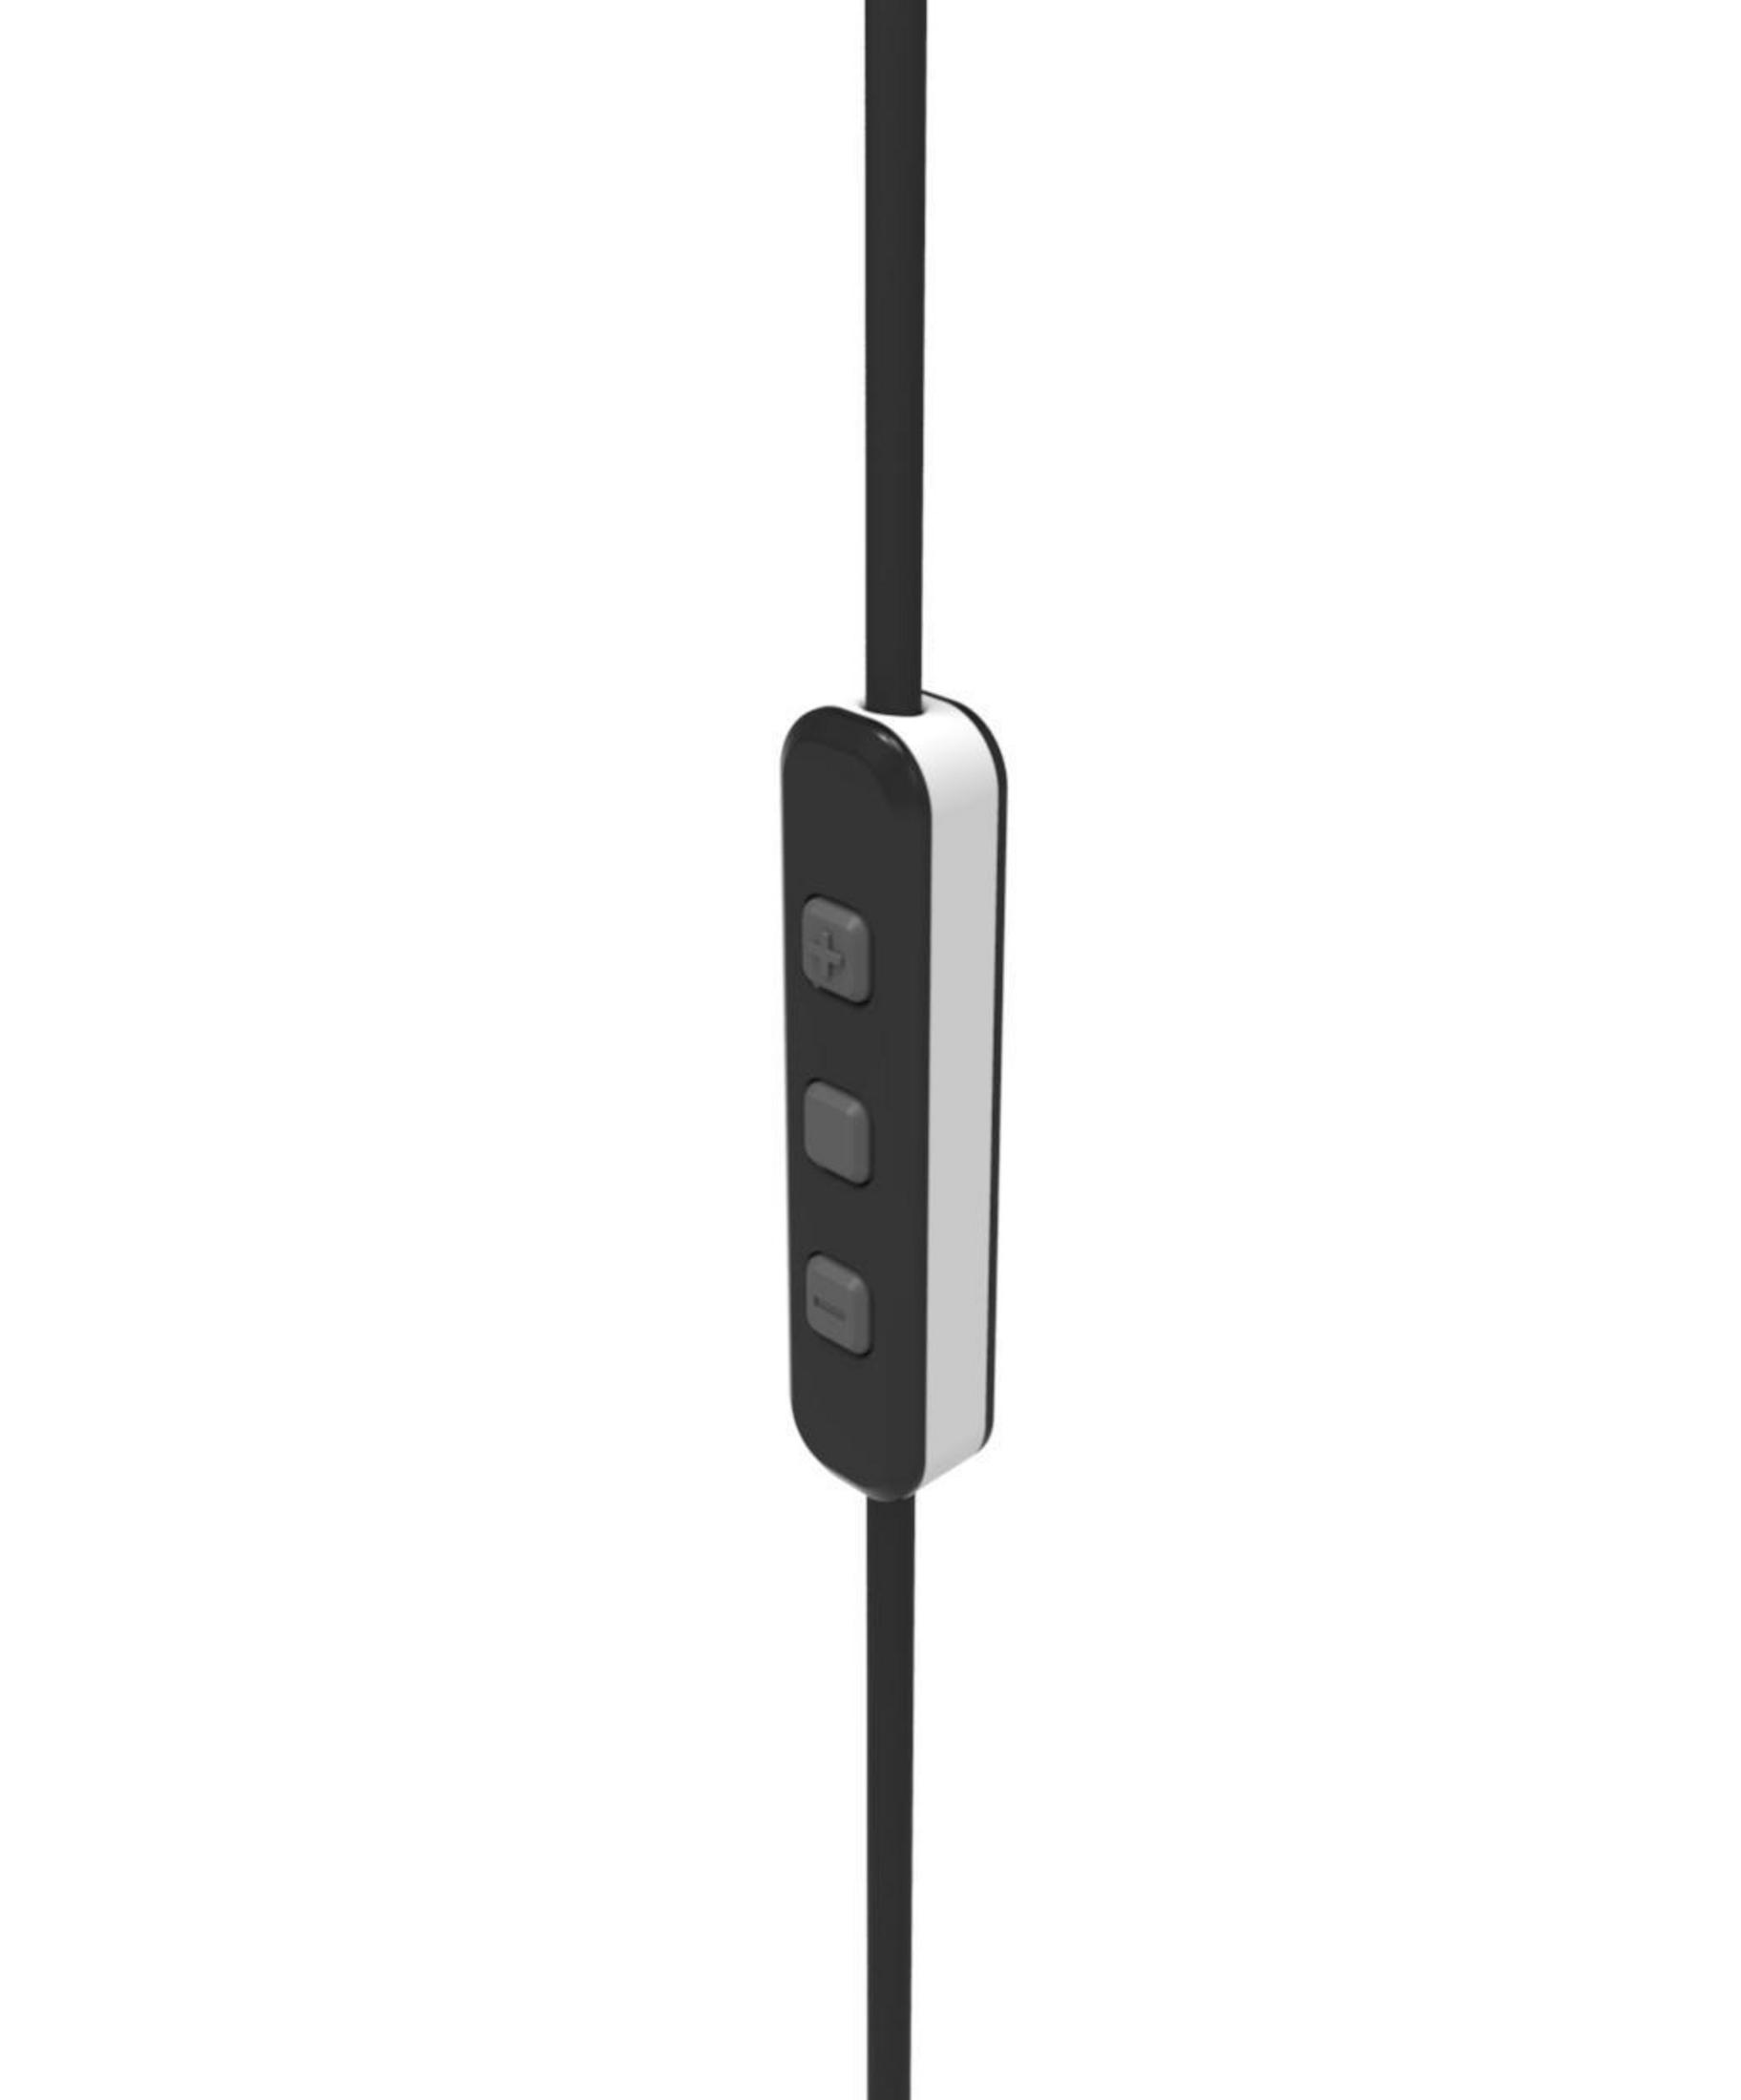 PIONEER In-ear SE-CL BT-W, Kopfhörer Bluetooth Weiß 5